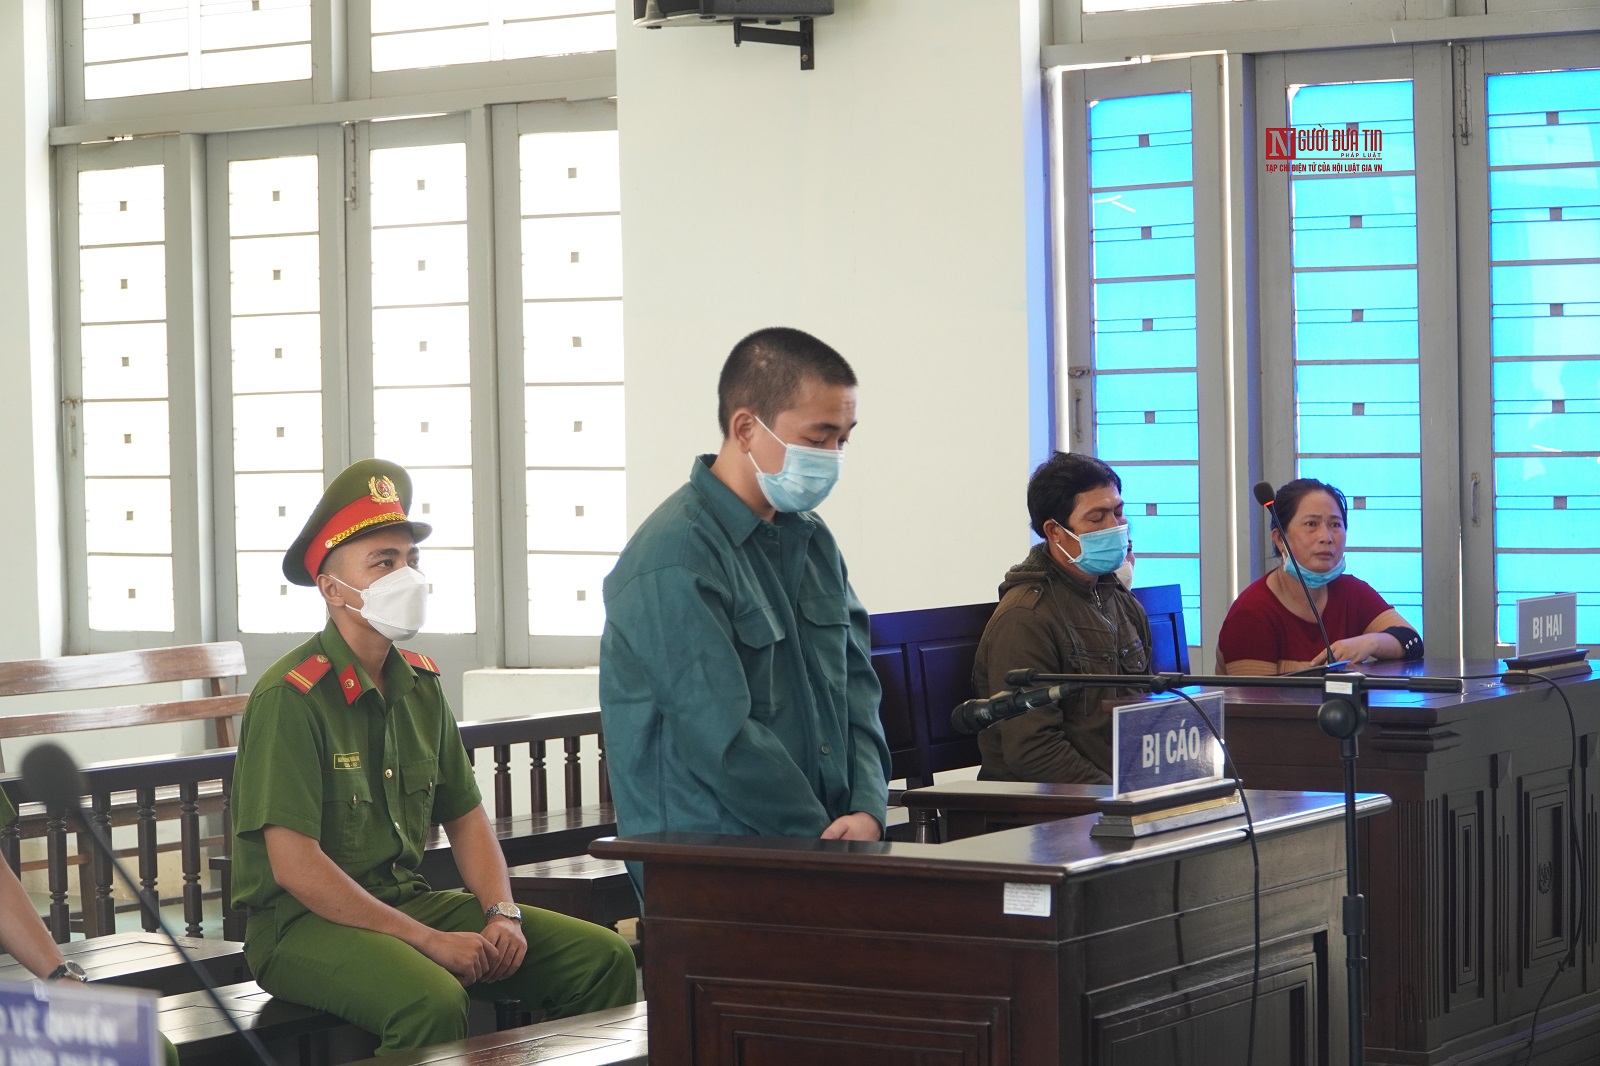 Hồ sơ điều tra - Bình Thuận: Đối tượng dùng kéo làm cá đâm chết người lãnh án tù